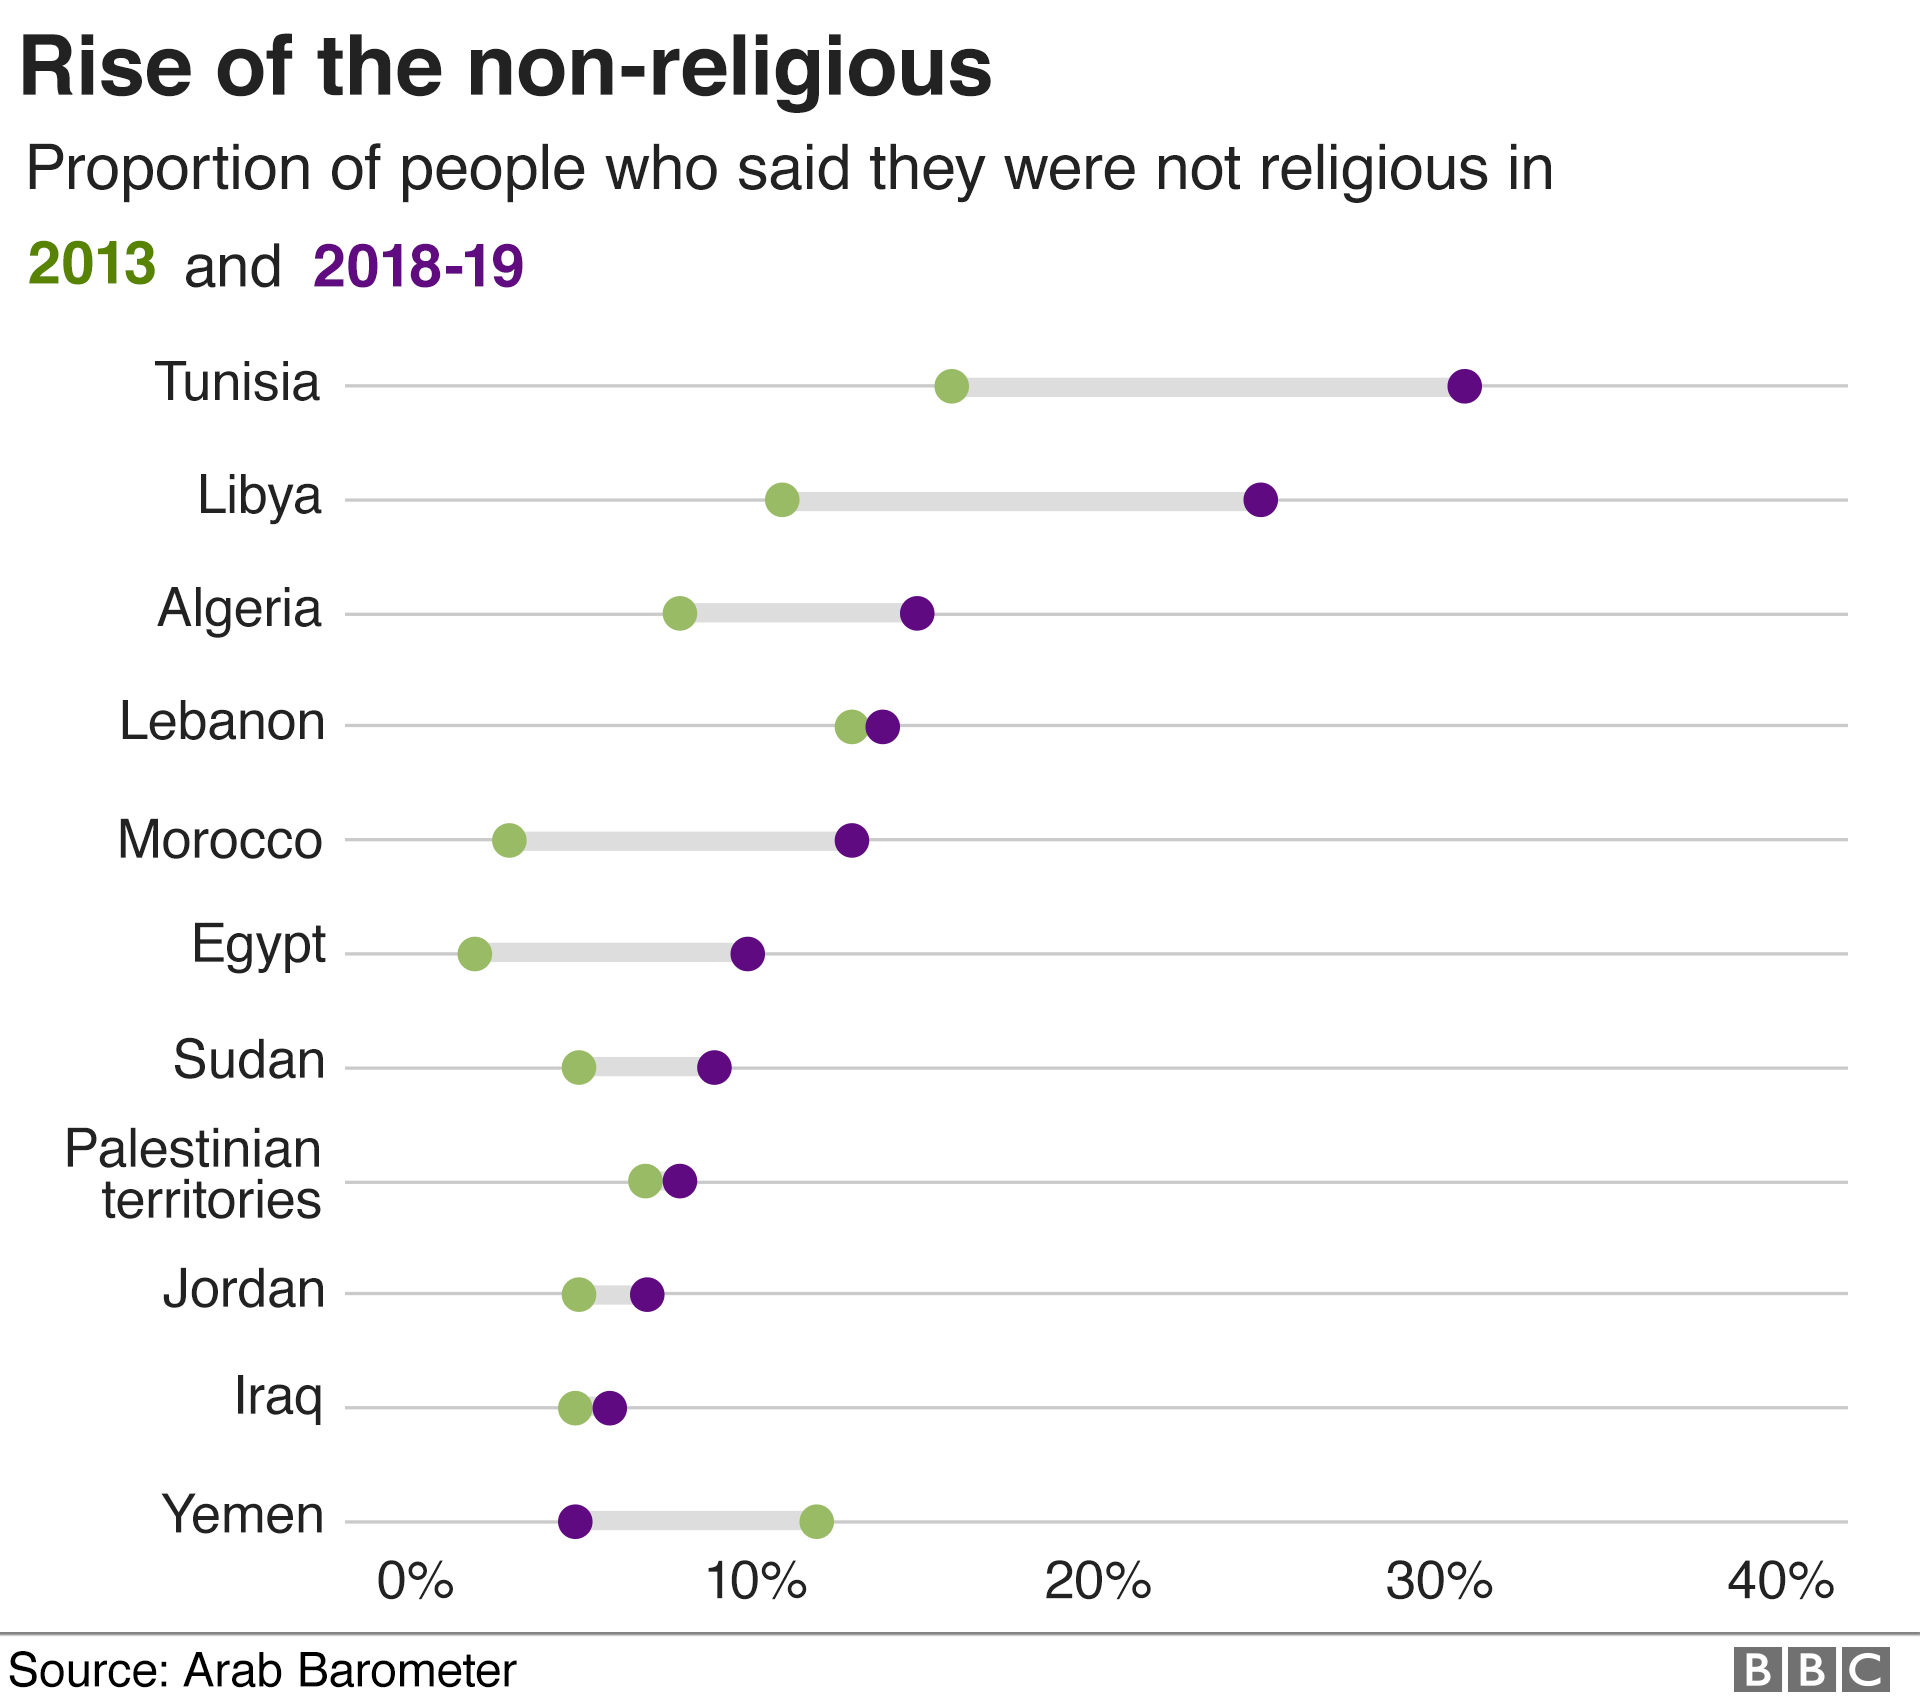 График, показывающий, что с 2013 года доля людей, которые говорят, что они не религиозны, увеличилась повсюду, кроме Йемена